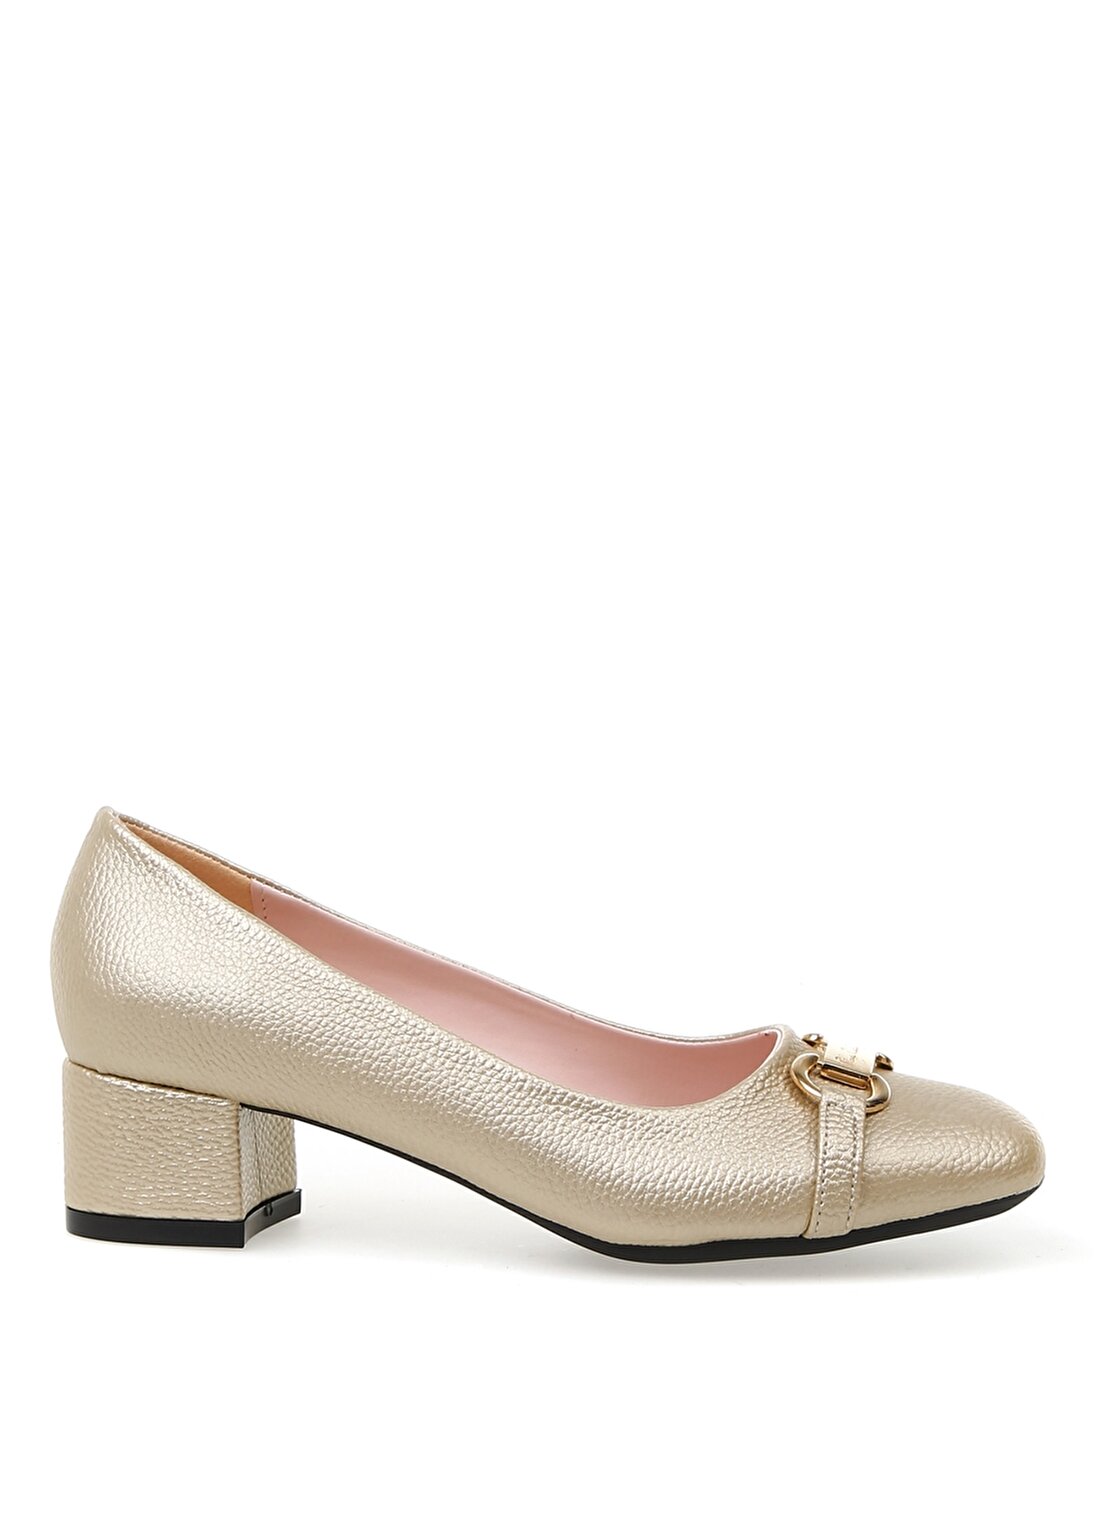 Pierre Cardin 54152 Yazlık Altın Kadın Topuklu Ayakkabı